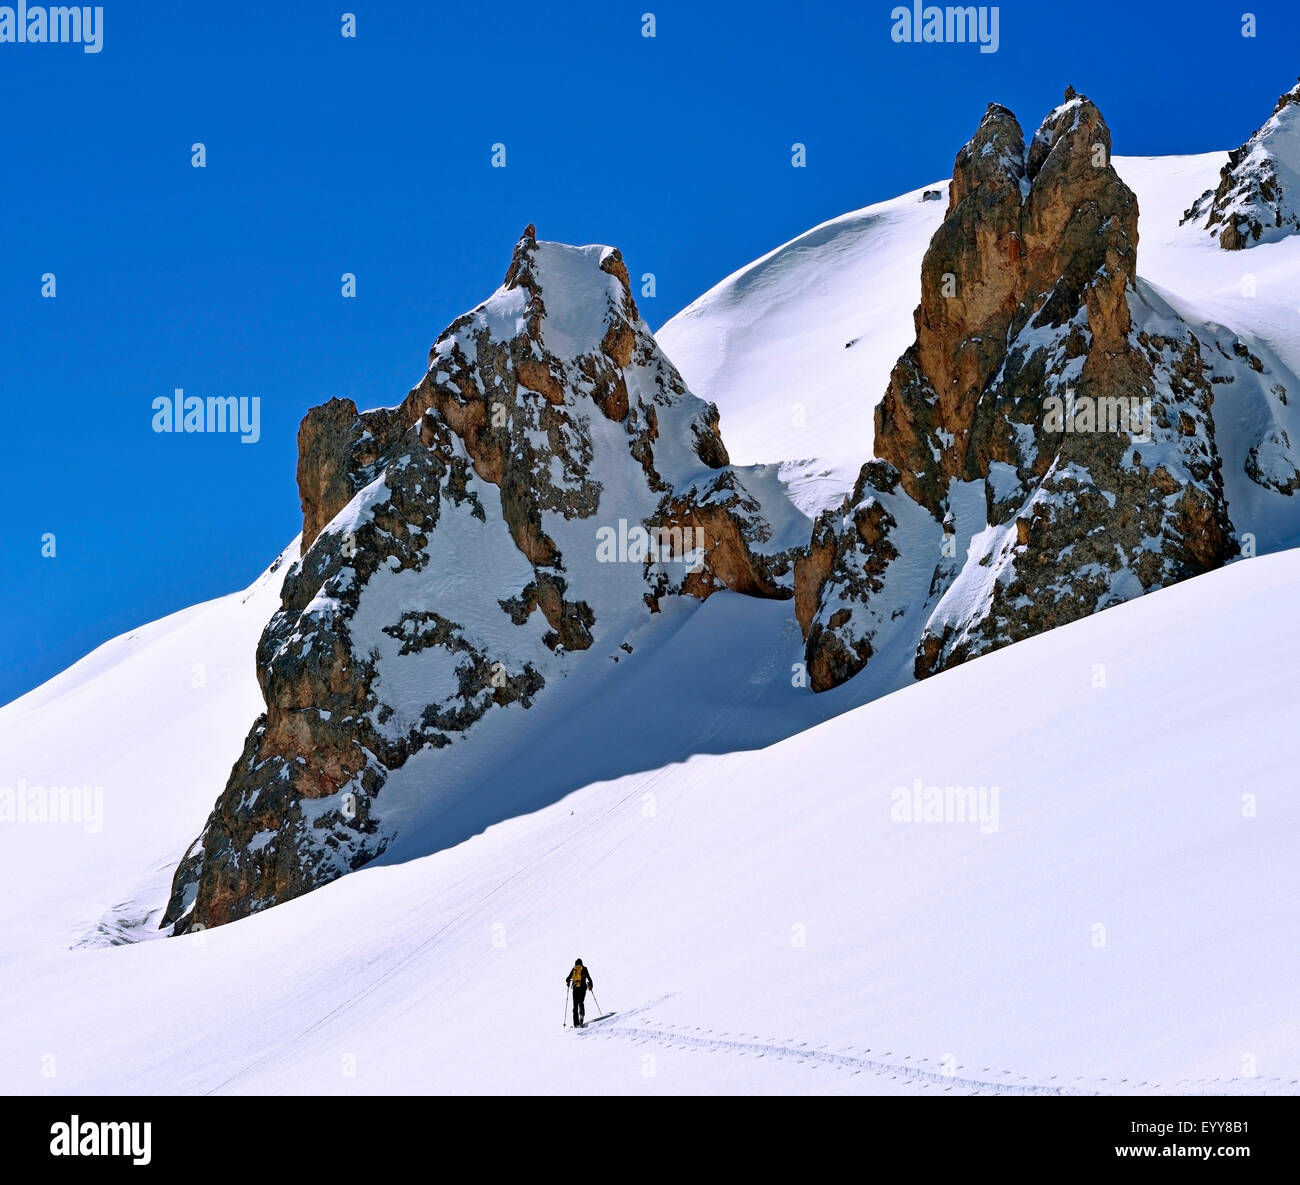 Ski de randonnée dans la neige couverts Alpes, France, Savoie, Parc National de la Vanoise, Courchevel Banque D'Images